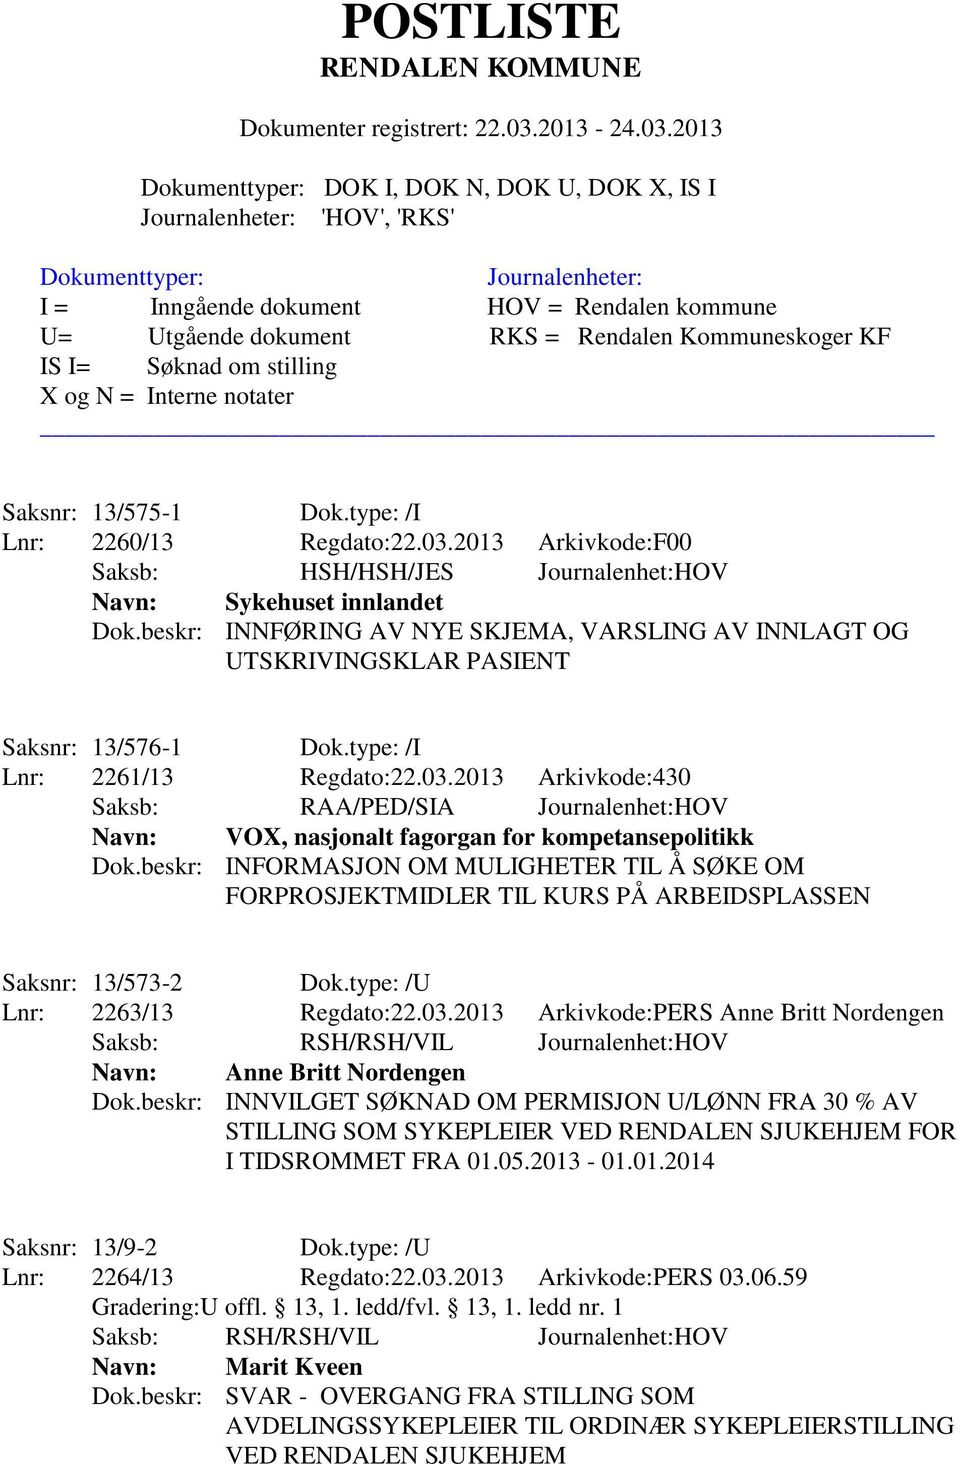 2013 Arkivkode:430 Saksb: RAA/PED/SIA Journalenhet:HOV Navn: VOX, nasjonalt fagorgan for kompetansepolitikk Dok.